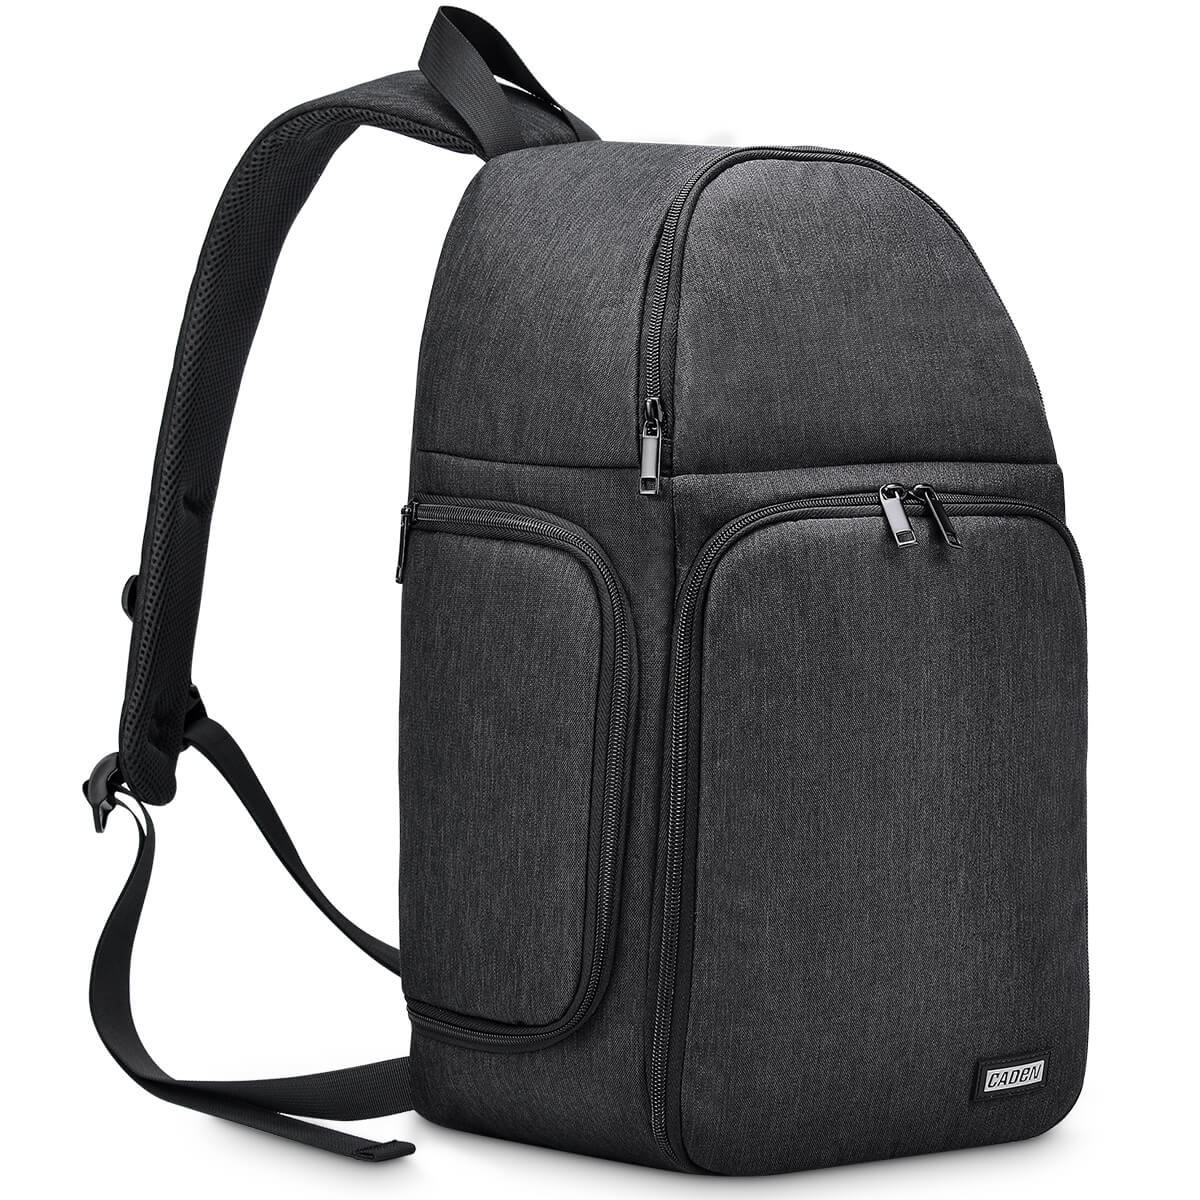 7-Layer Portable Shoulder bag Outdoor Camera Video Bag Case For Digital DSLR Slr Camera